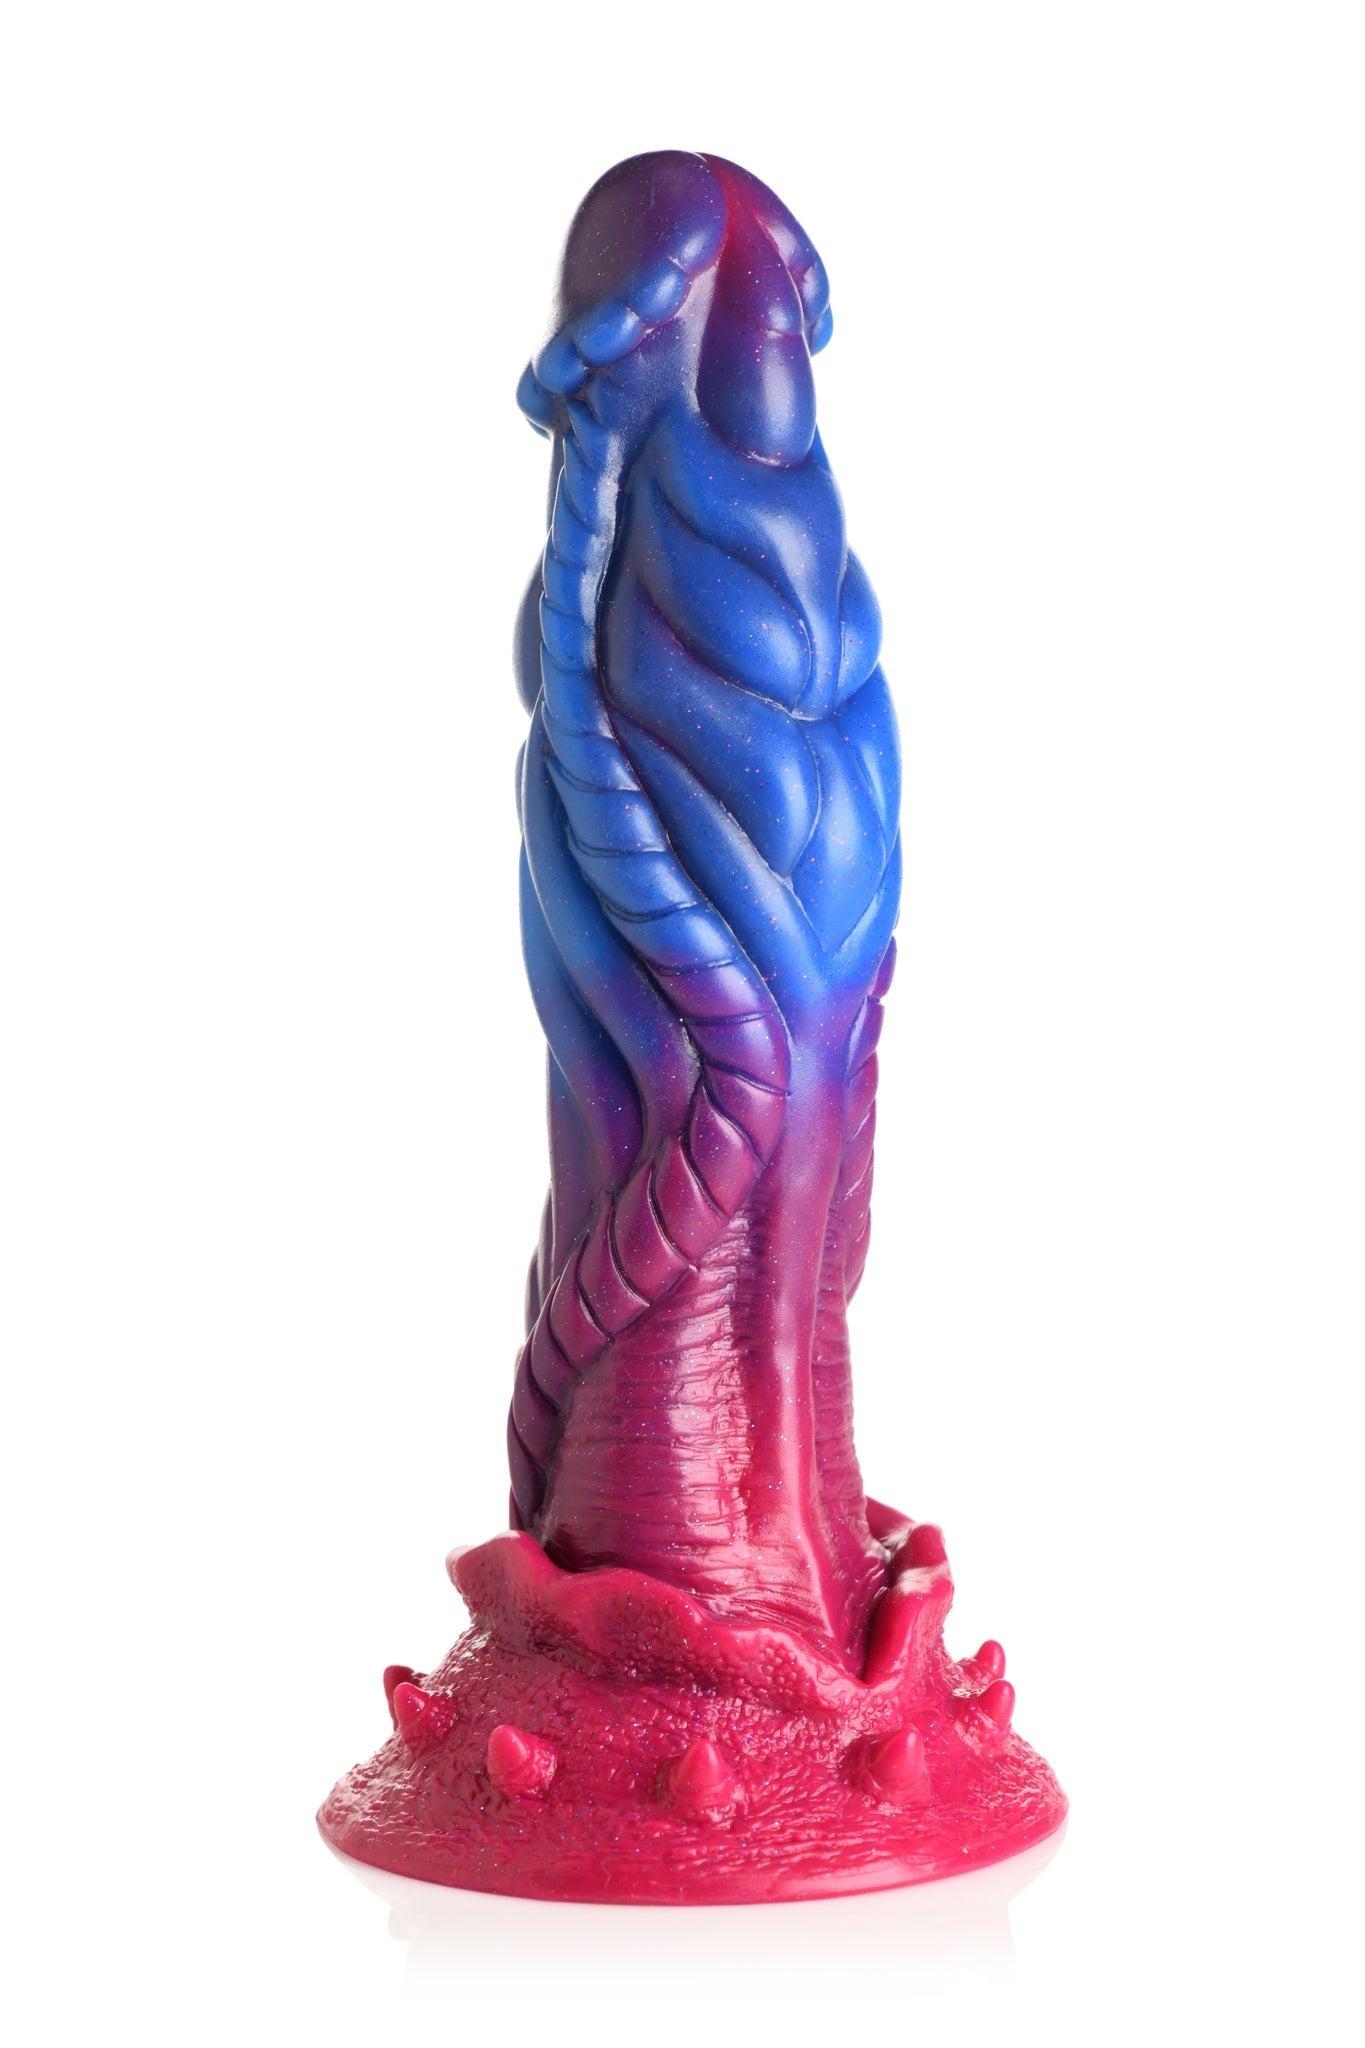 Intruder Alien Fantasy Dildo made of Silicone by Creature Cocks